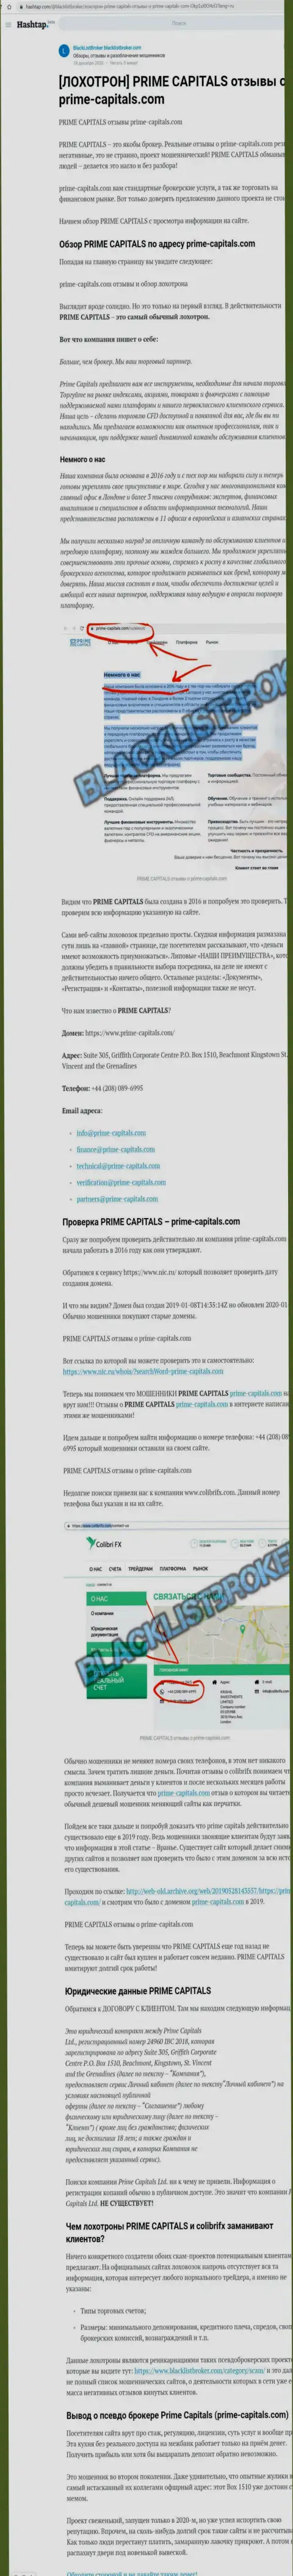 Prime Capitals - наглый развод своих клиентов (обзор противоправных махинаций)